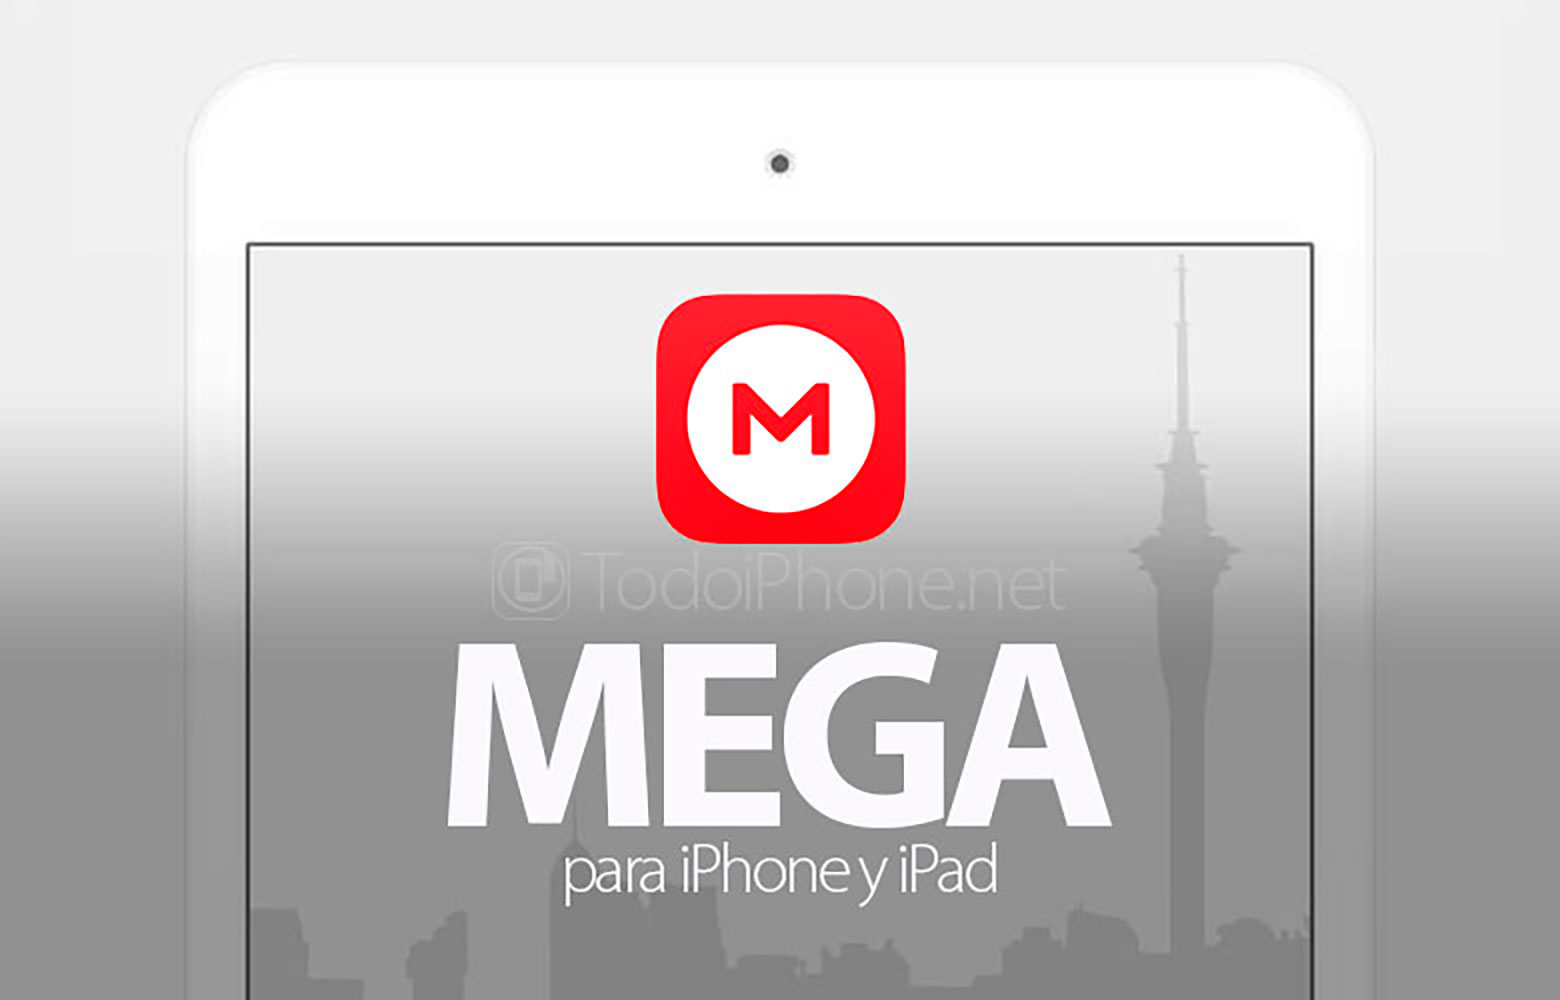 تصل MEGA بميزات جديدة لأجهزة iPhone و iPad 1